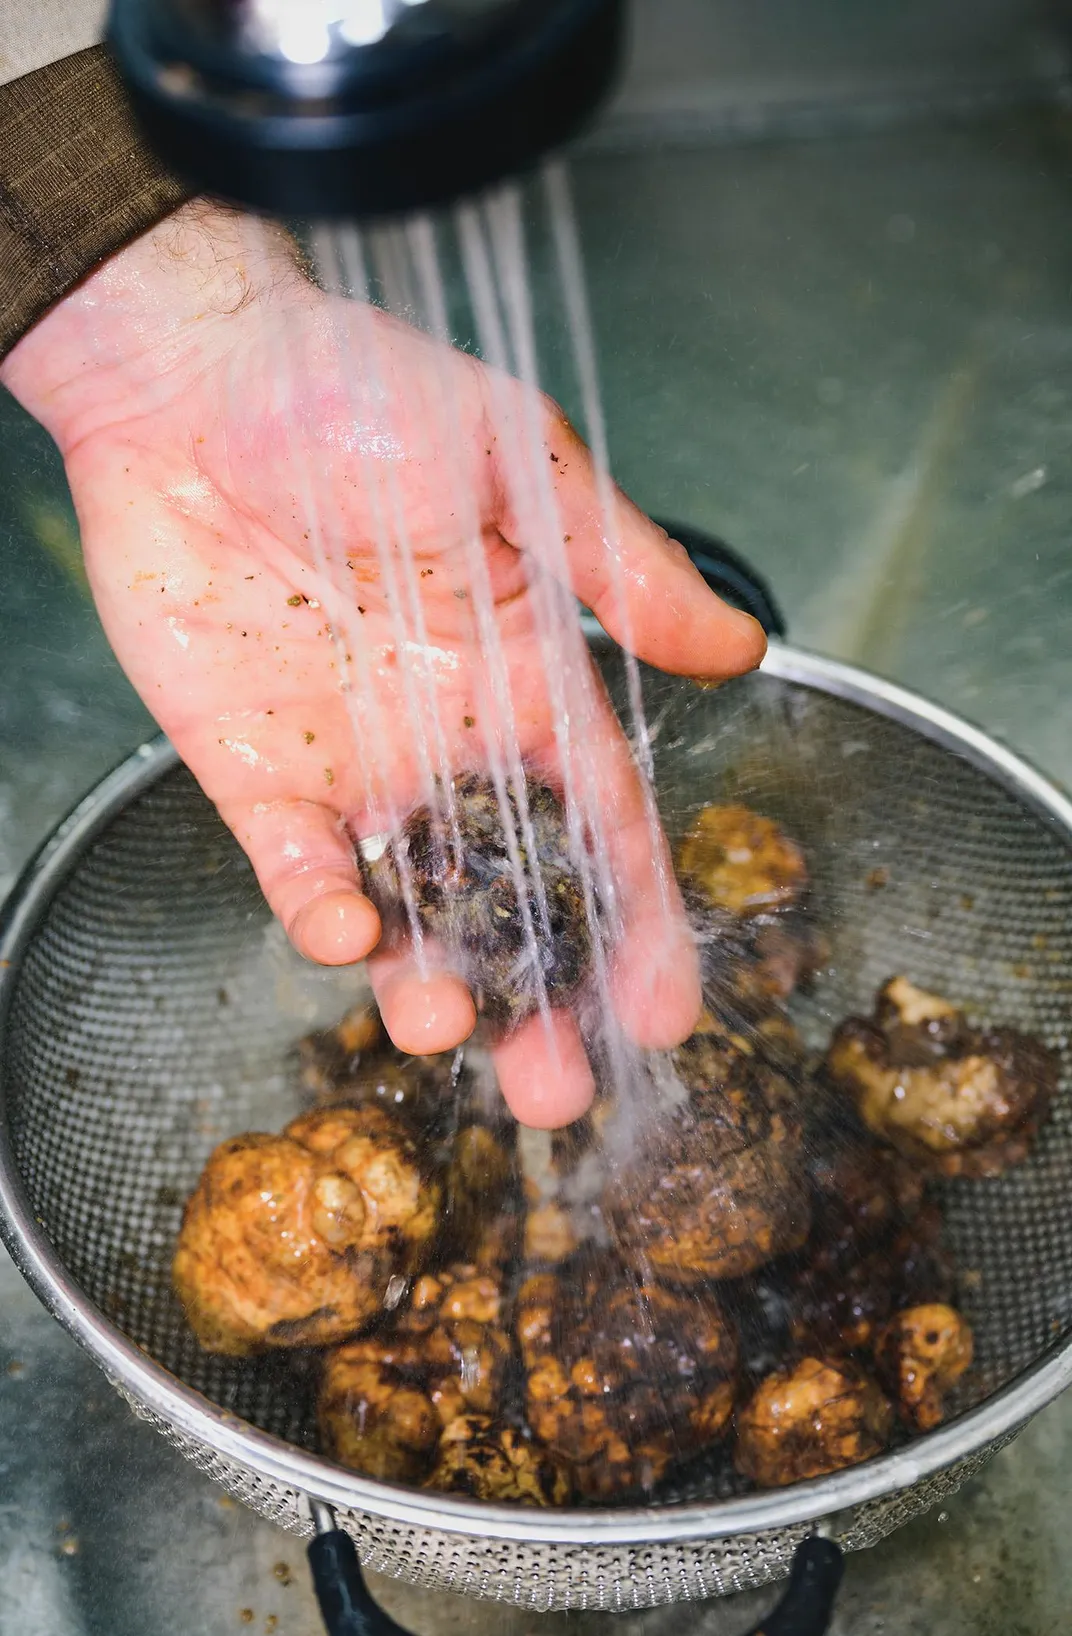 truffles being rinsed